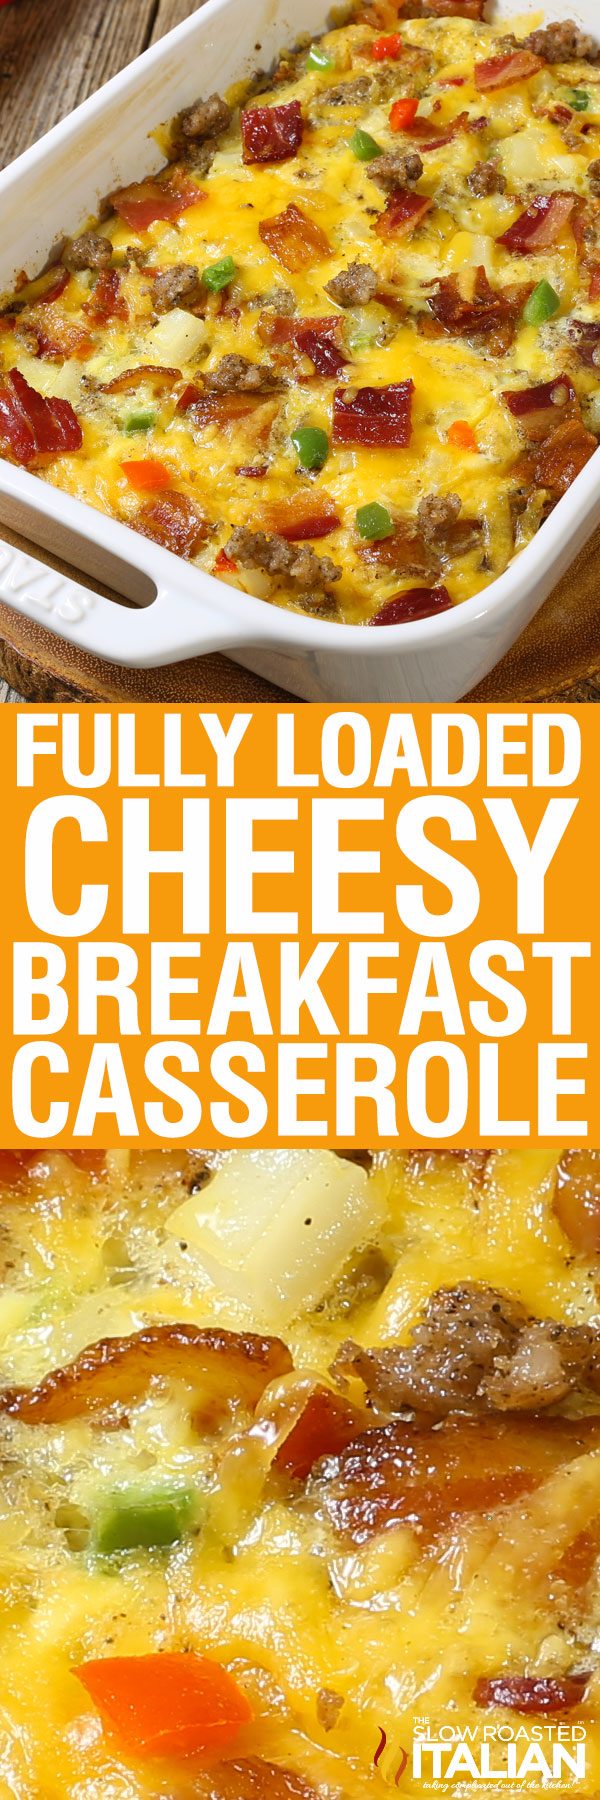 fully-loaded-cheesy-breakfast-casserole-pin-5014248